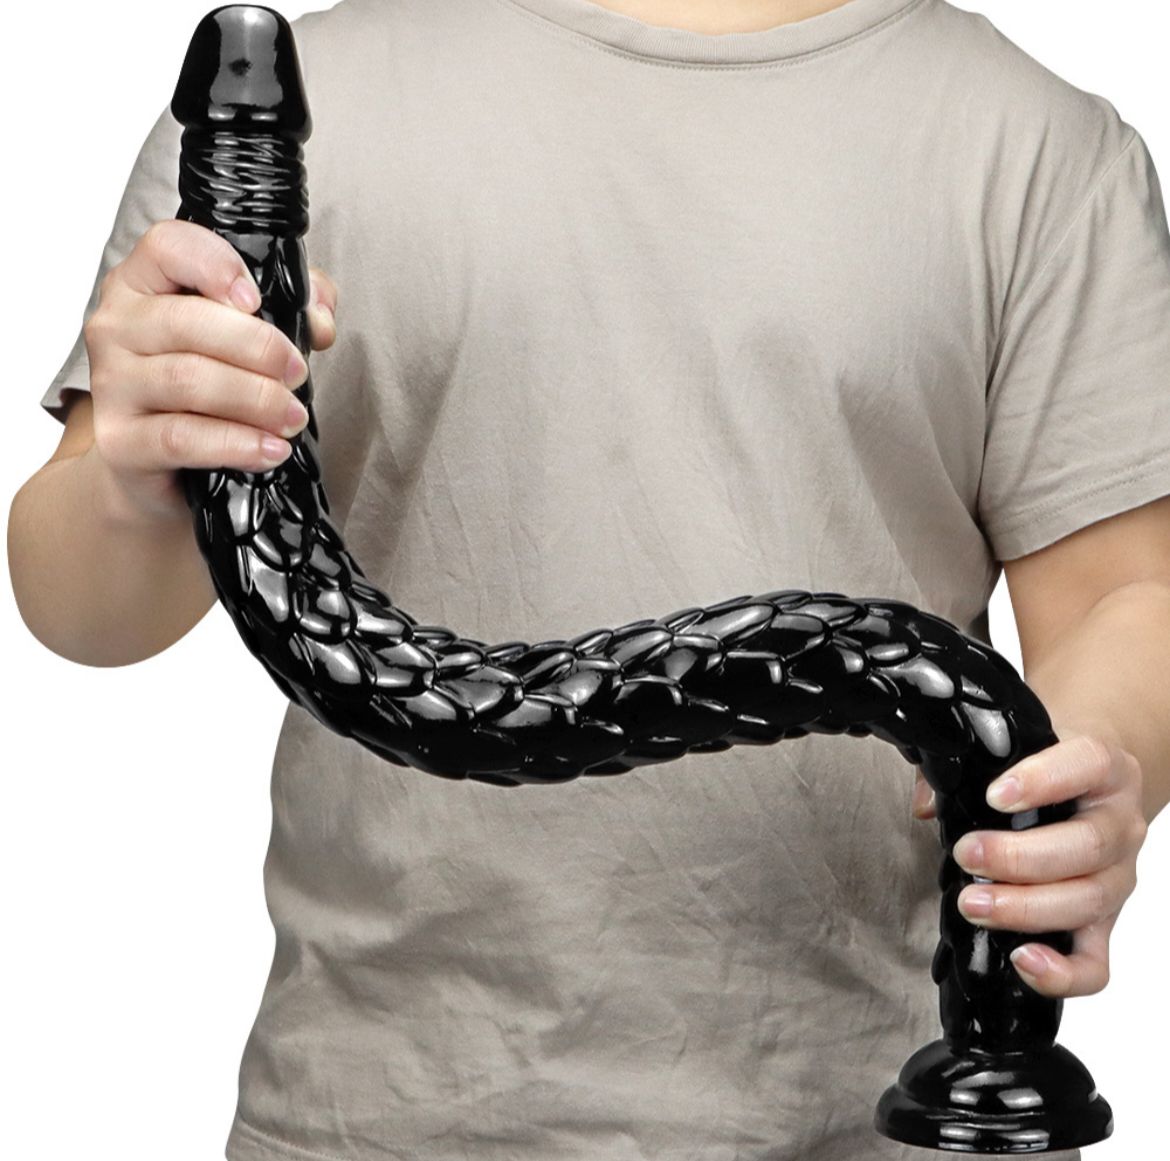 Lång och mjuk dildo, en riktig anaconda snake. En 62 cm lång dildo med kraftig sugpropp.